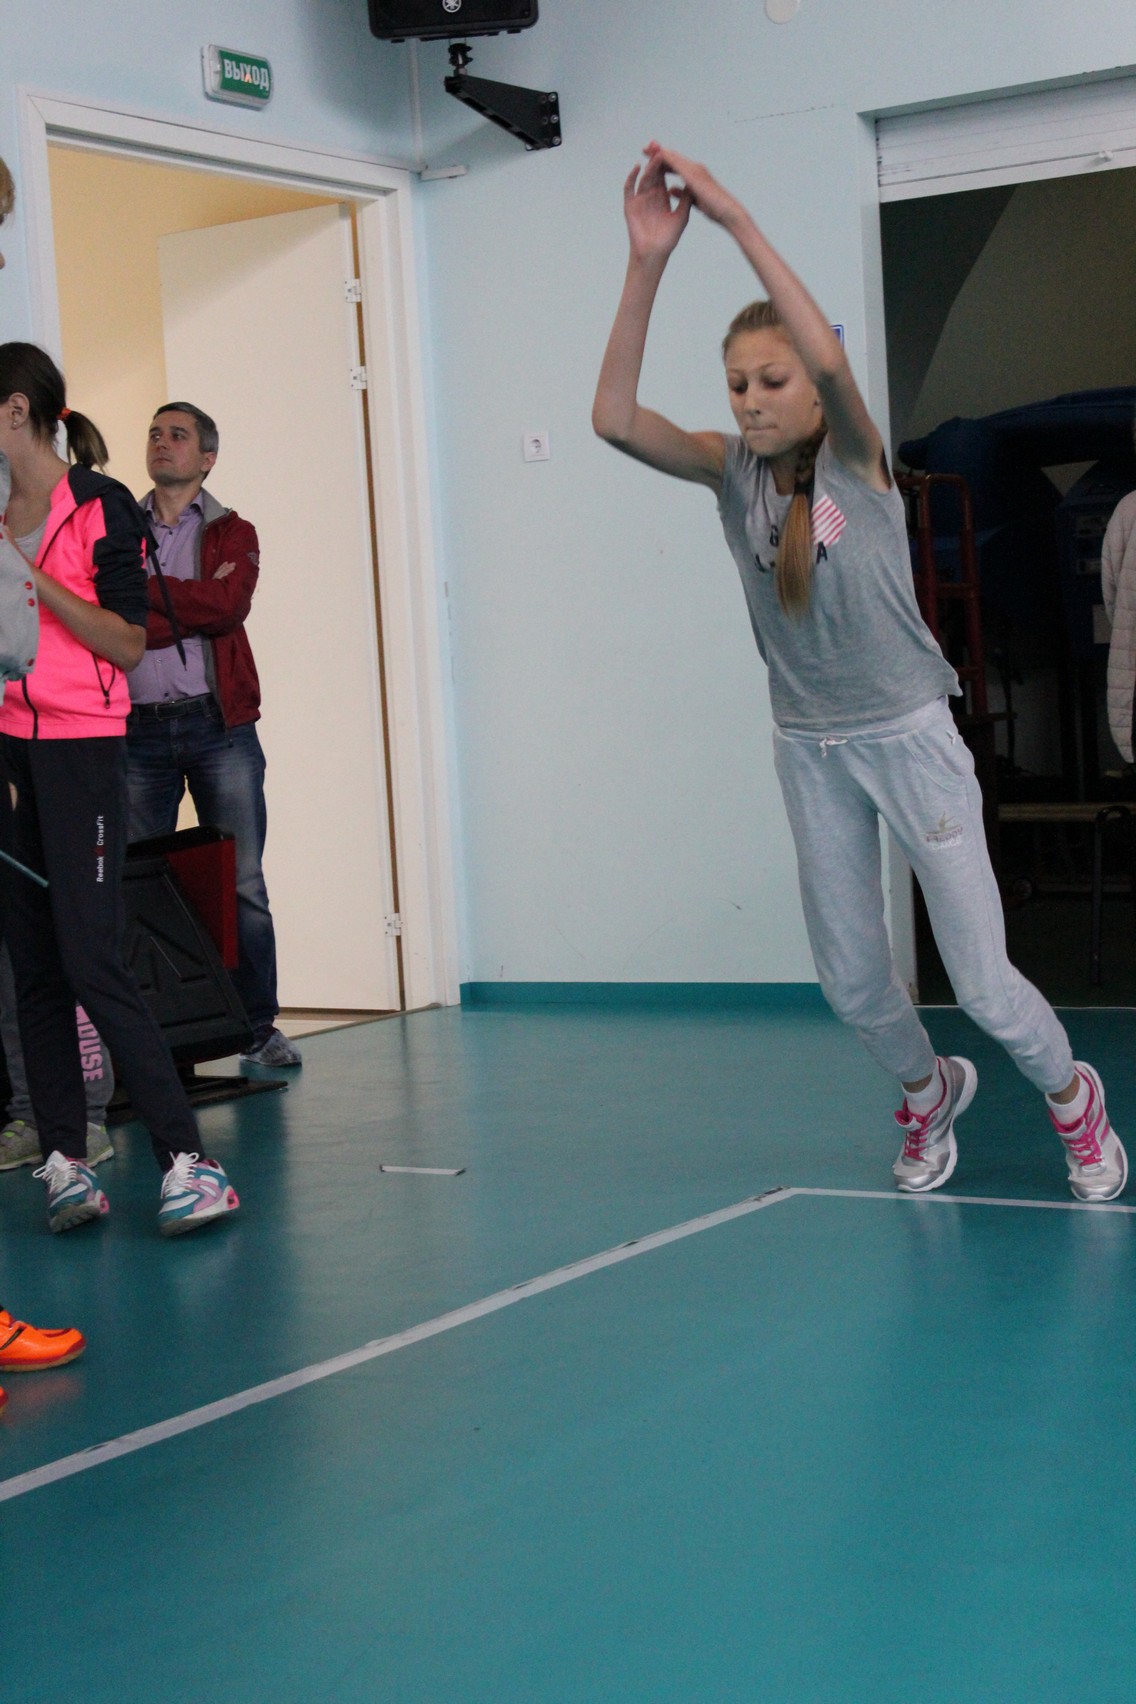 Тестовые испытания в ВЦ "Сахалин" для желающих заниматься волейболом